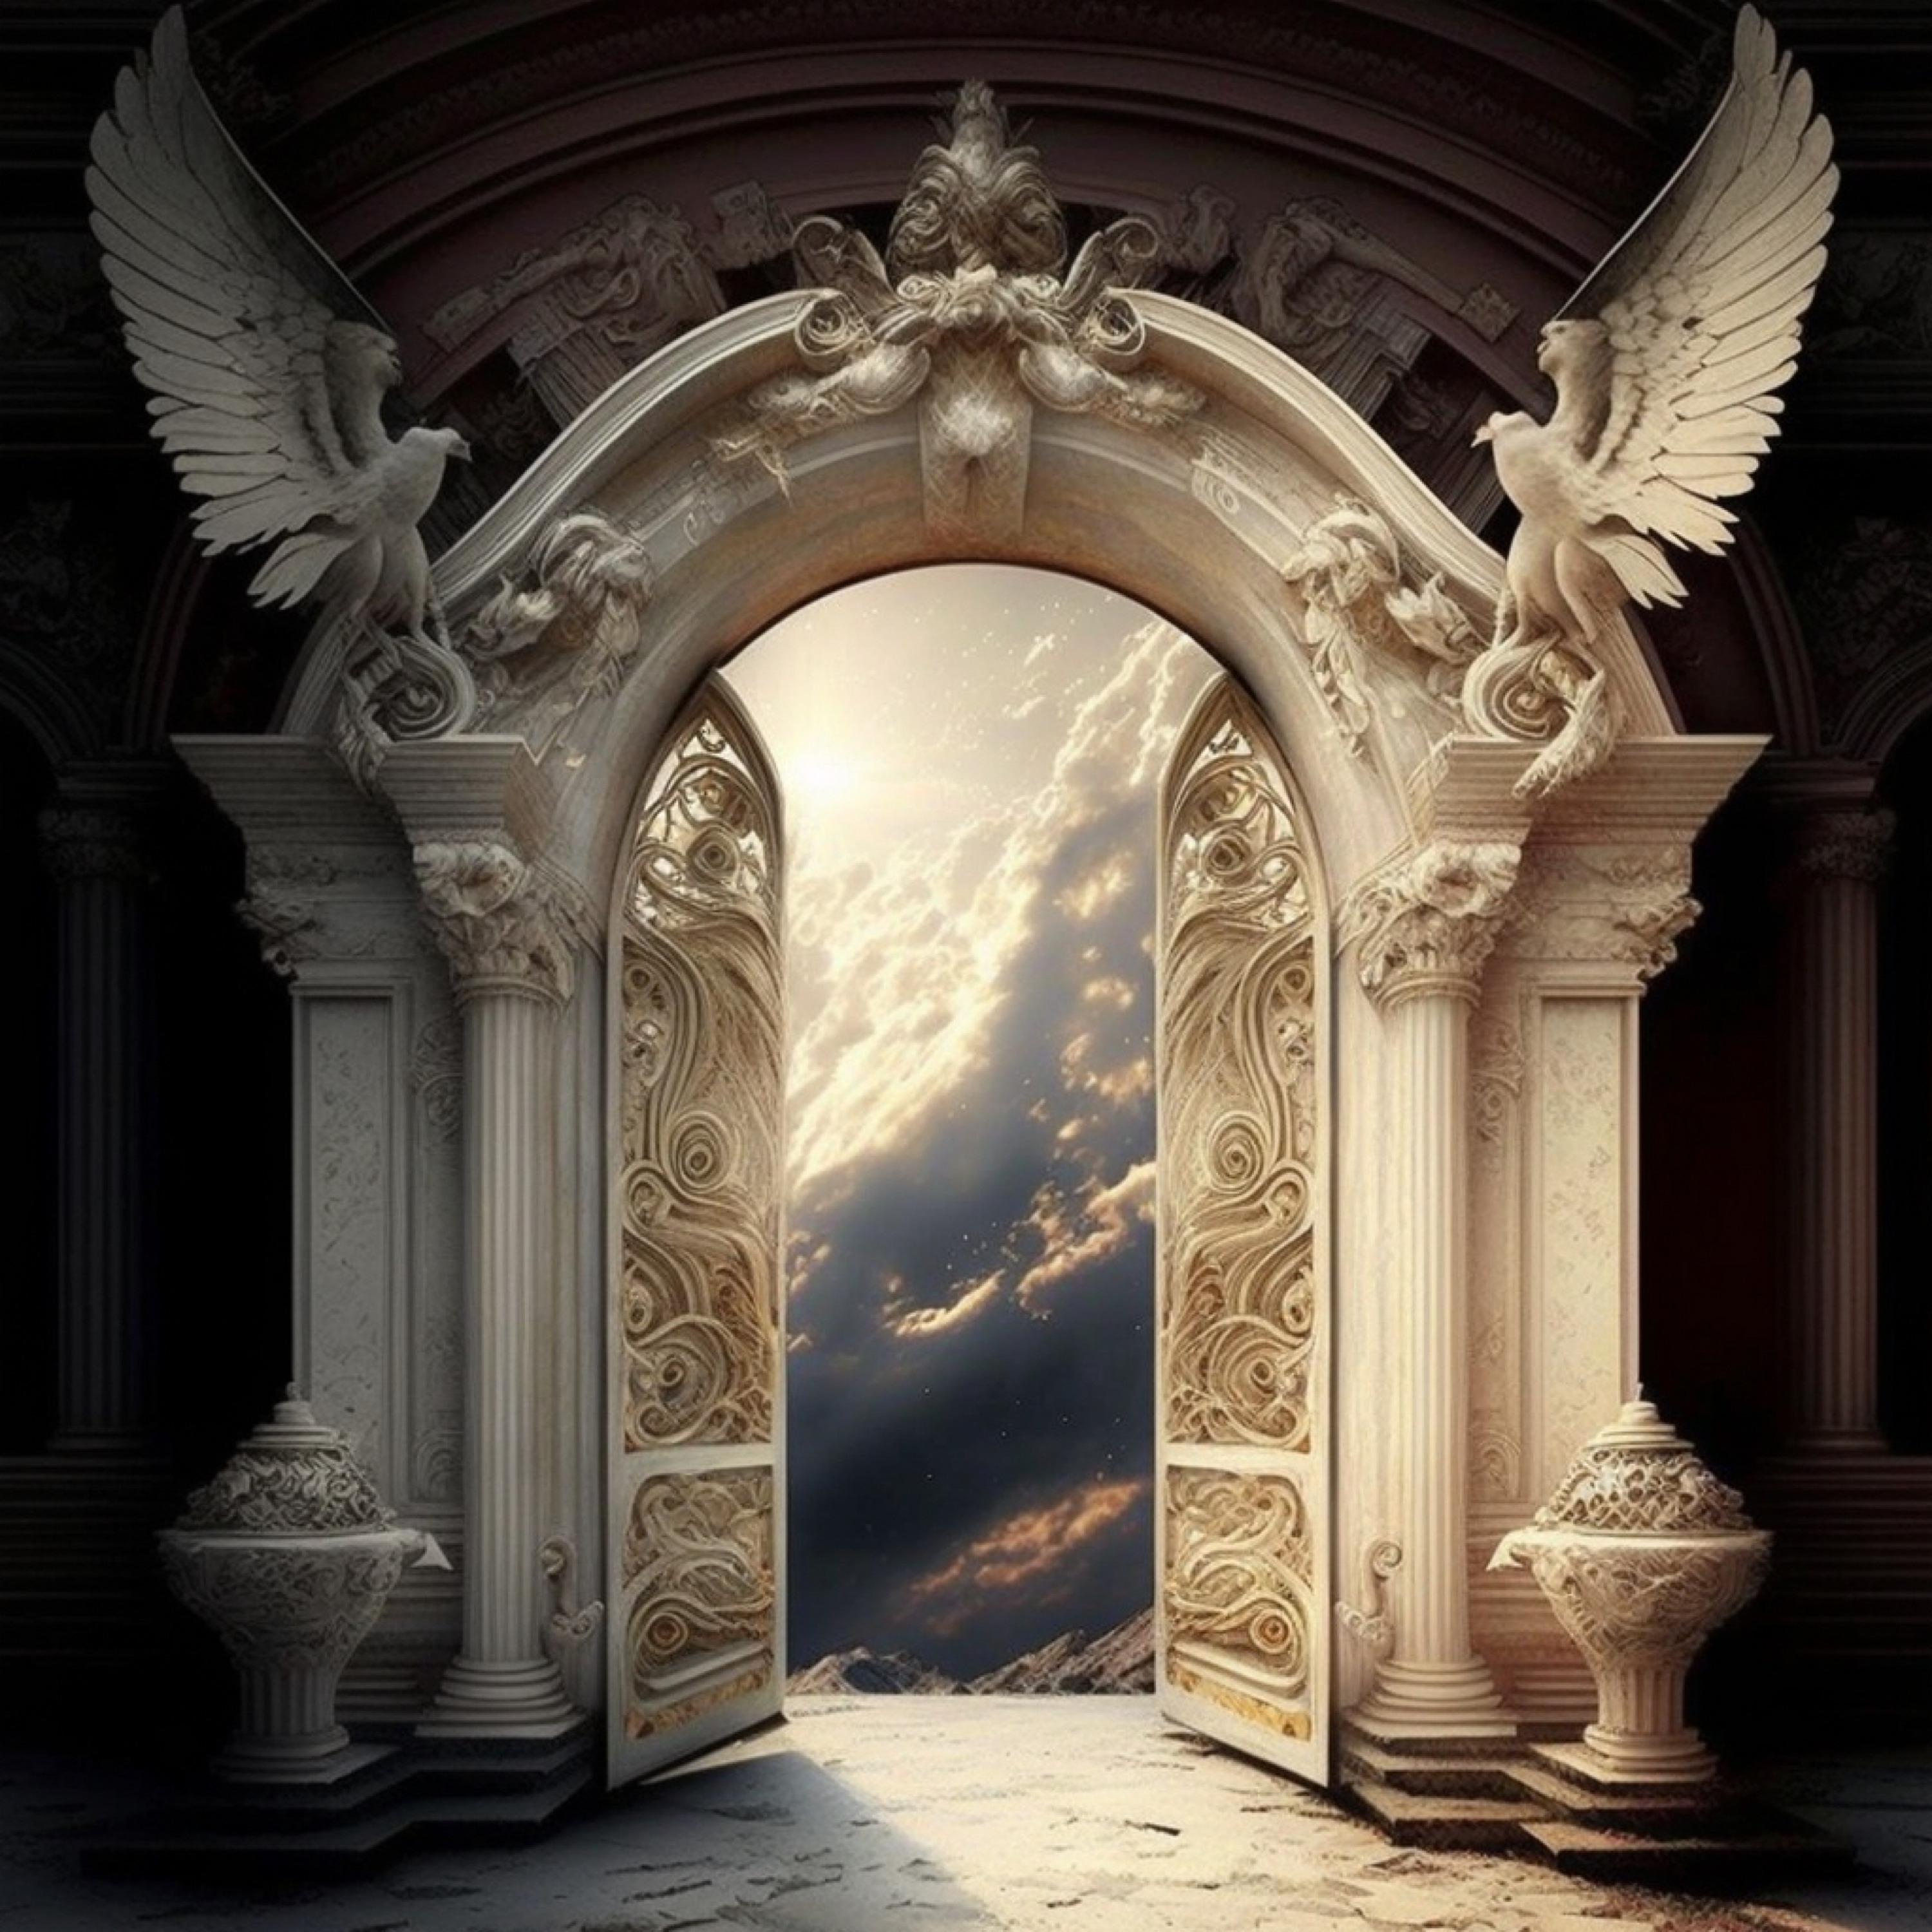 Постер альбома Versailles